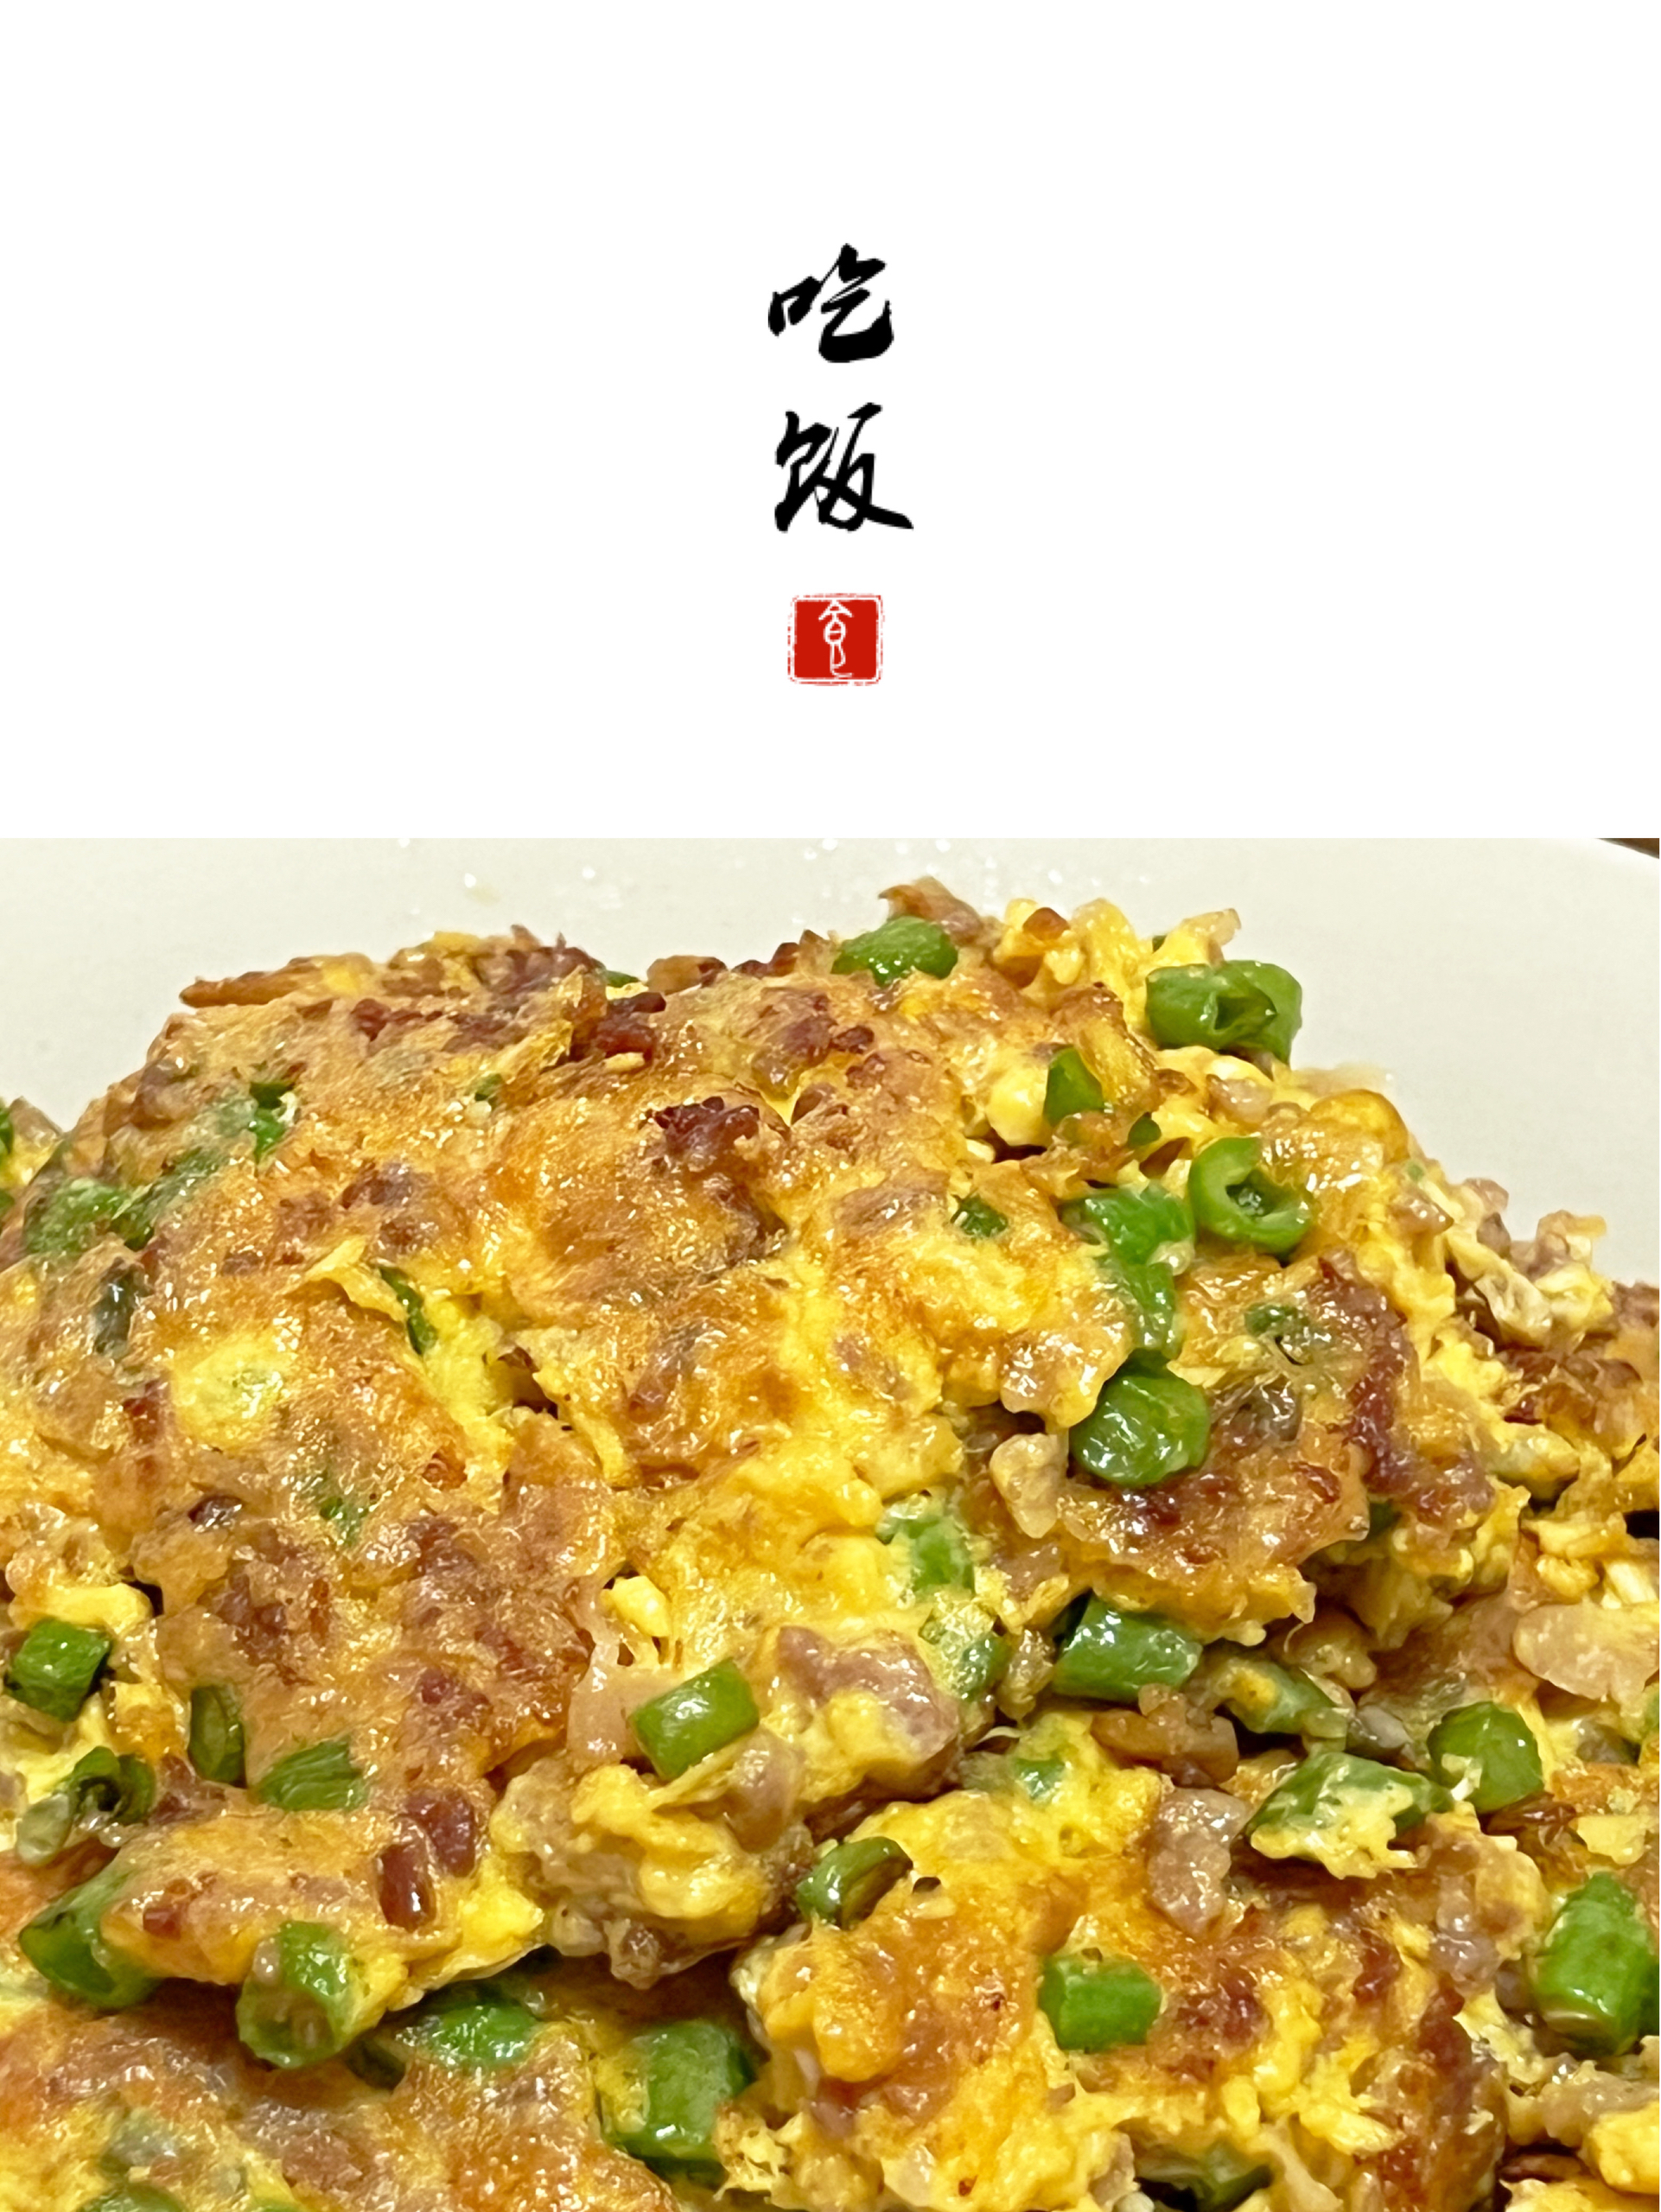 分享100道家常菜丨豆角肉沫煎蛋的做法